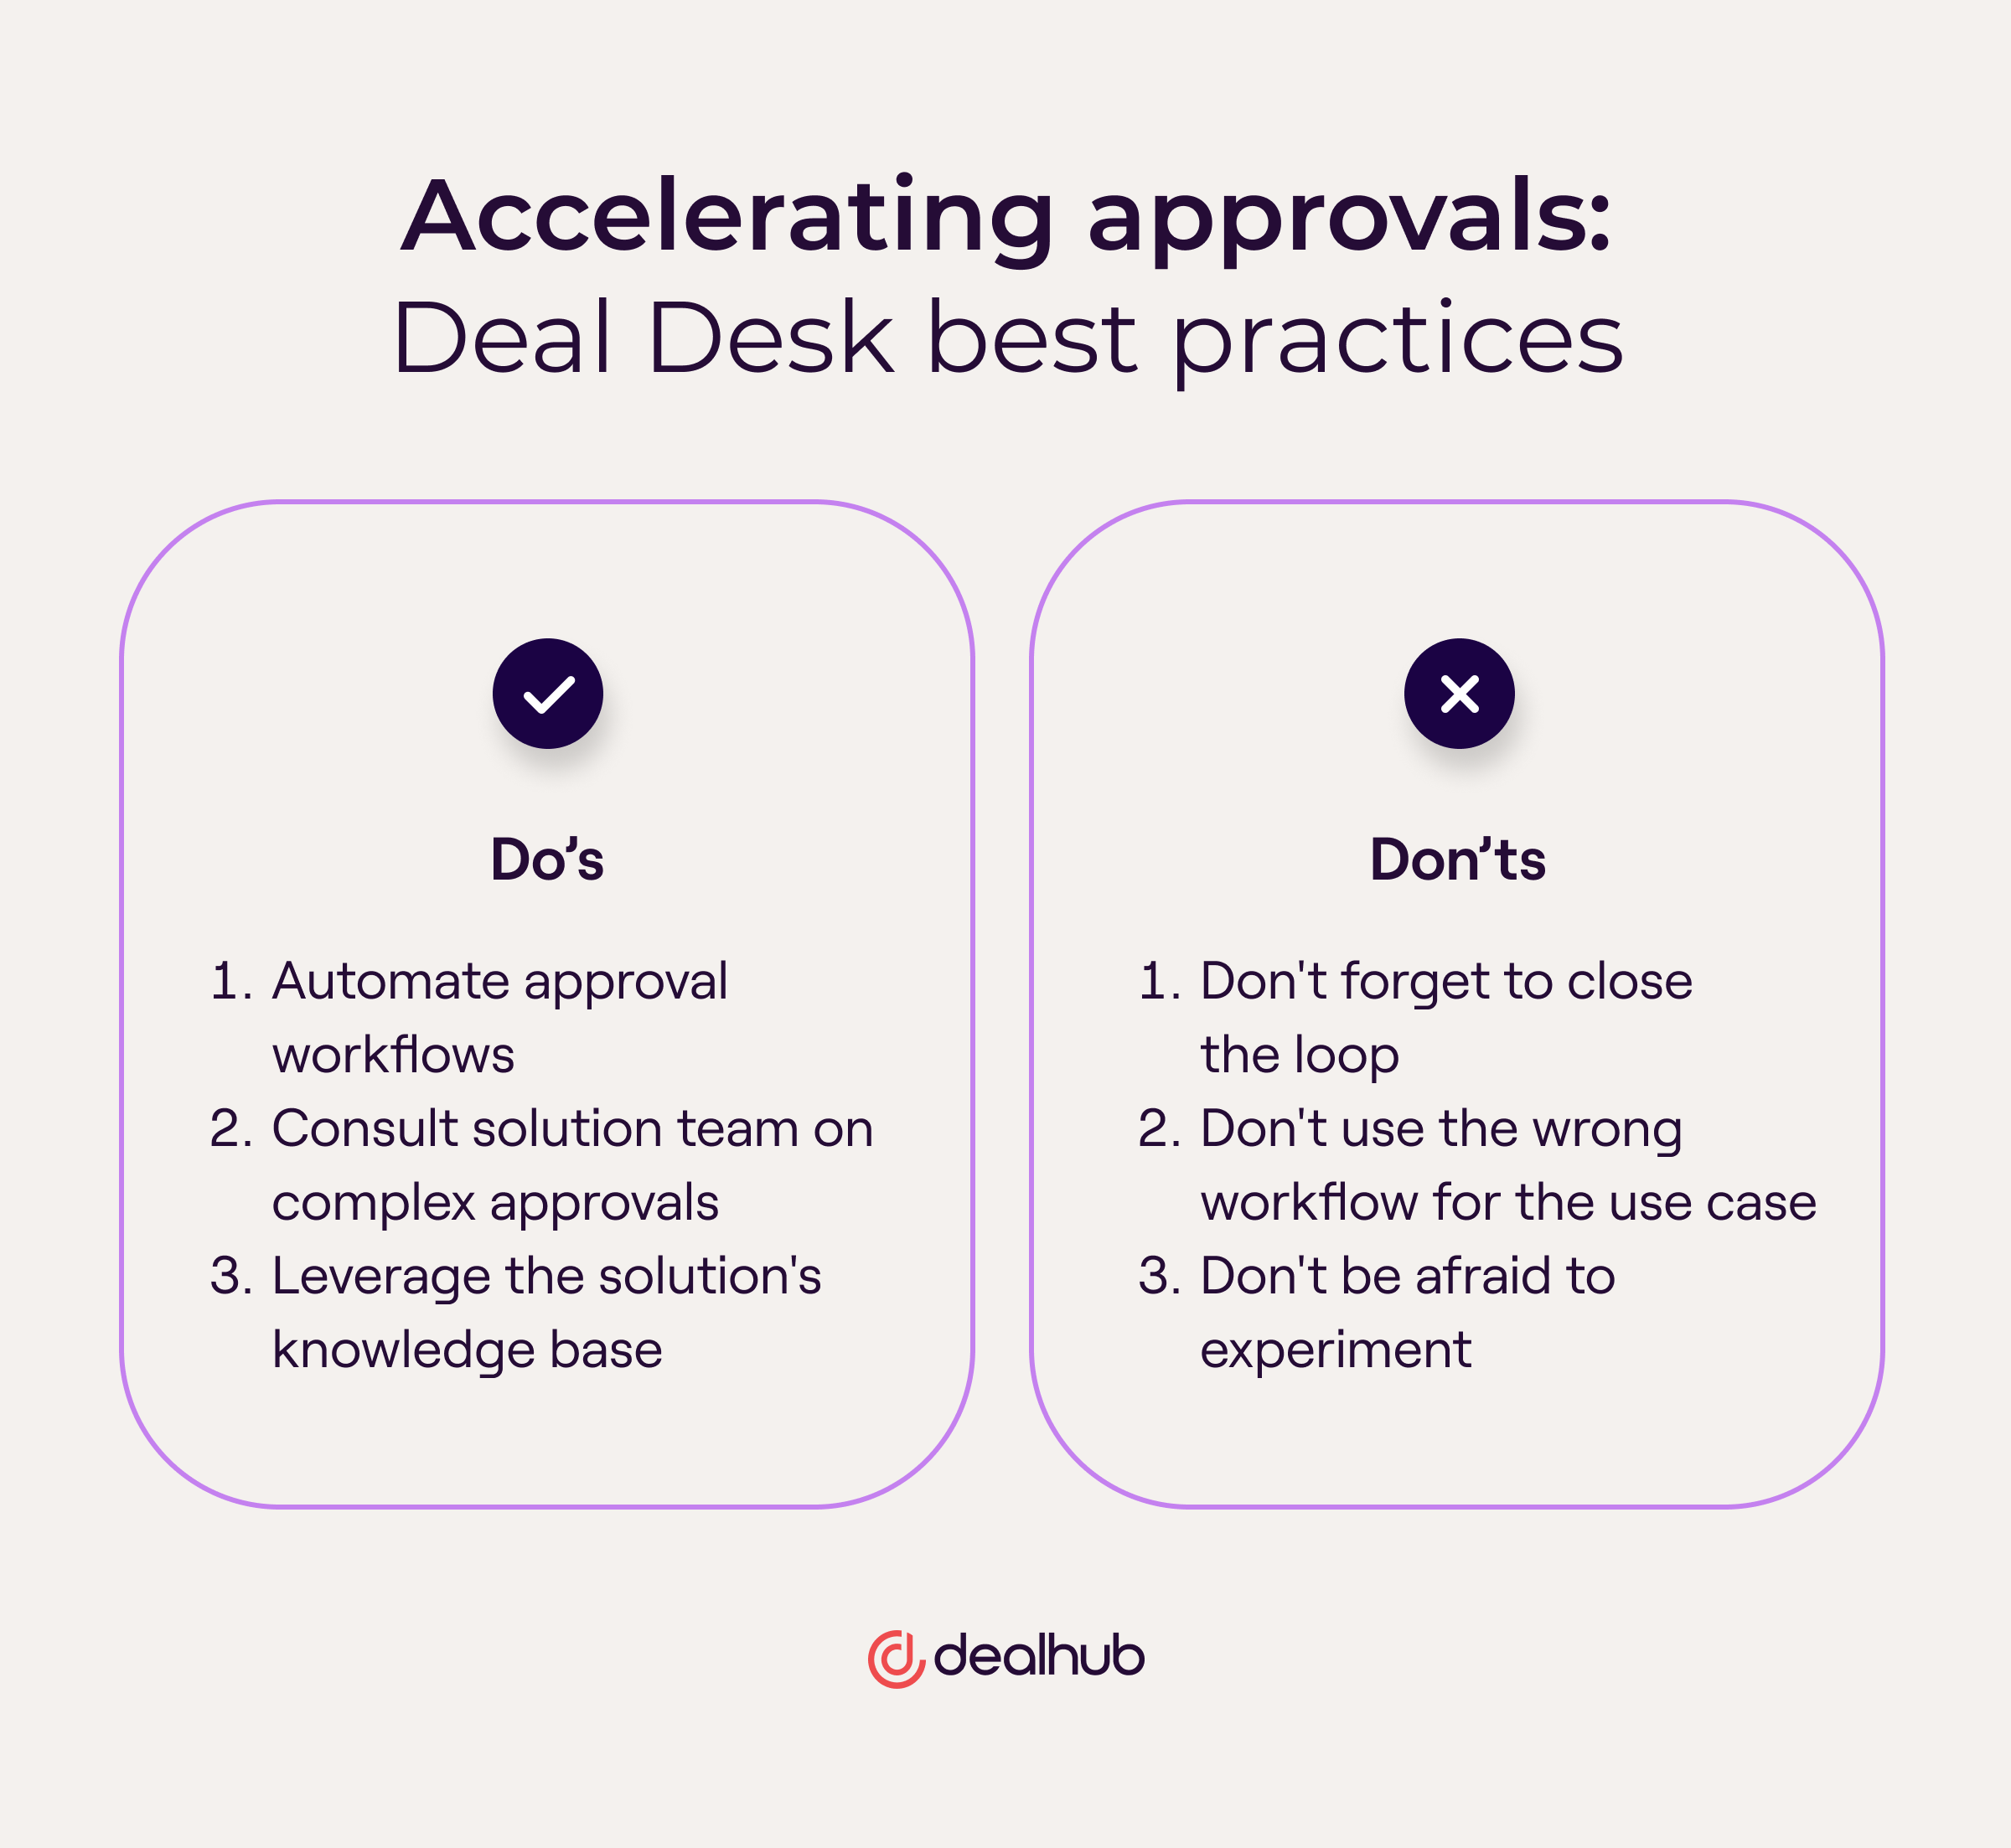 Deal Desk best practices